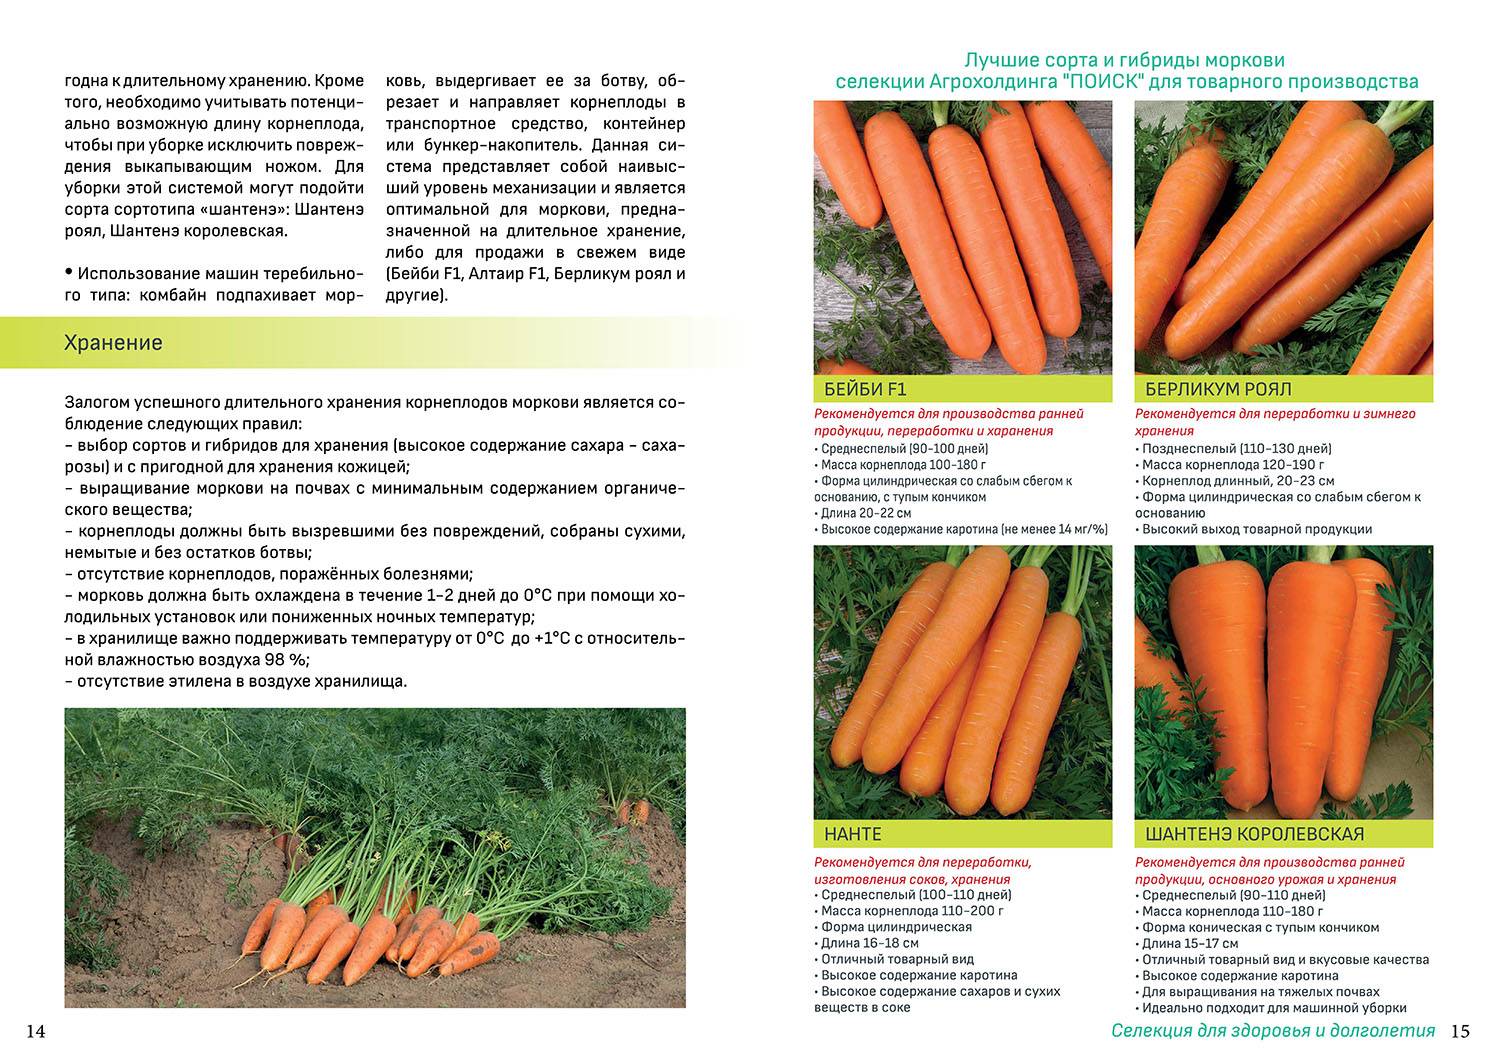 Морковь под зиму: когда сажать, какие сорта лучше сеять на урале, в сибири, подмосковье